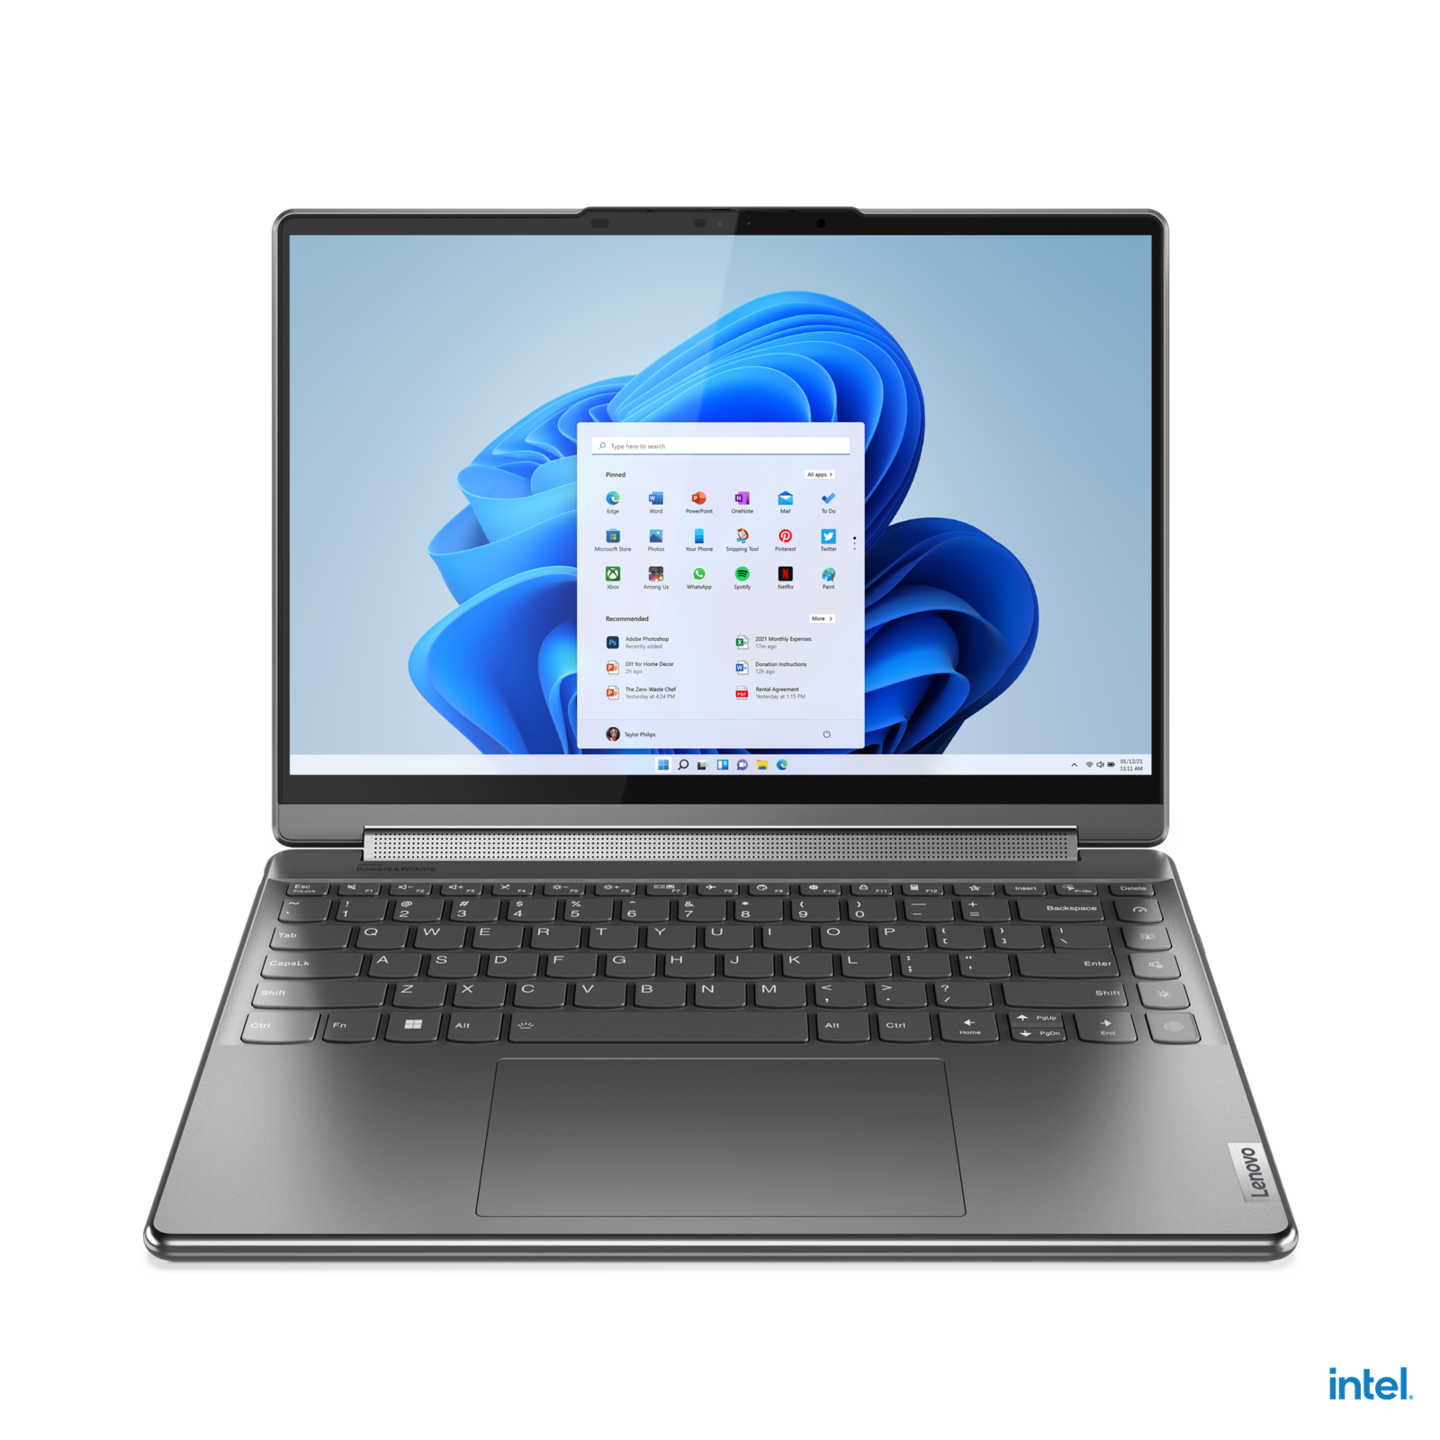 Máy tính xách tay Yoga 9i là một trong những chiếc laptop hàng đầu với thiết kế độc đáo và tính năng tuyệt vời. Bạn sẽ không muốn lãng phí bất kỳ chi tiết nào của chiếc laptop này, cho nên hãy tìm kiếm các hình nền đẹp để thêm phần hoàn hảo cho máy tính của bạn.